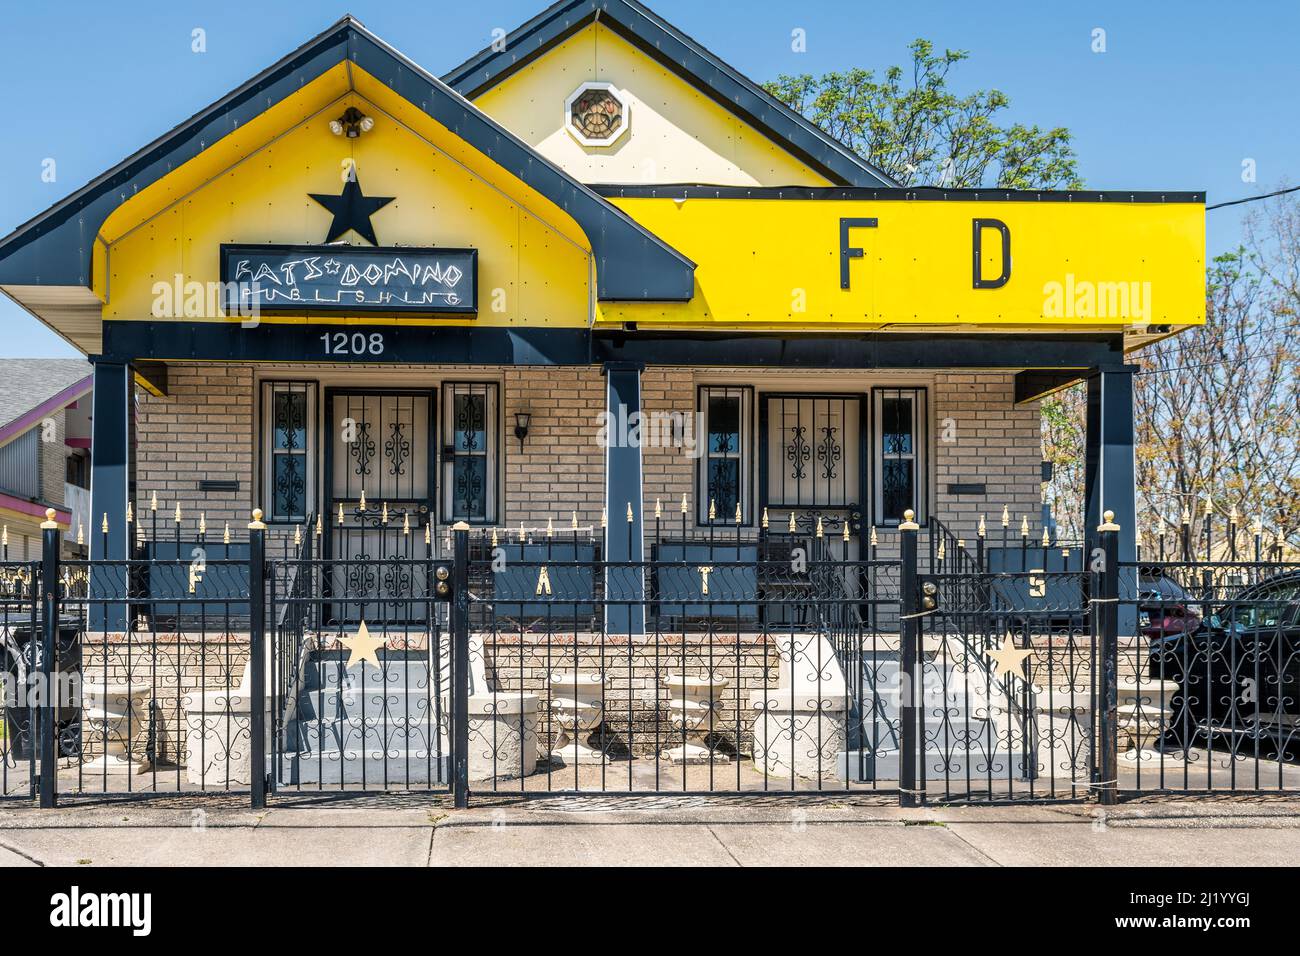 FATS Domino maison avant l'ouragan Katrina dans la neuvième partie inférieure de la Nouvelle-Orléans, Louisiane, États-Unis. Banque D'Images